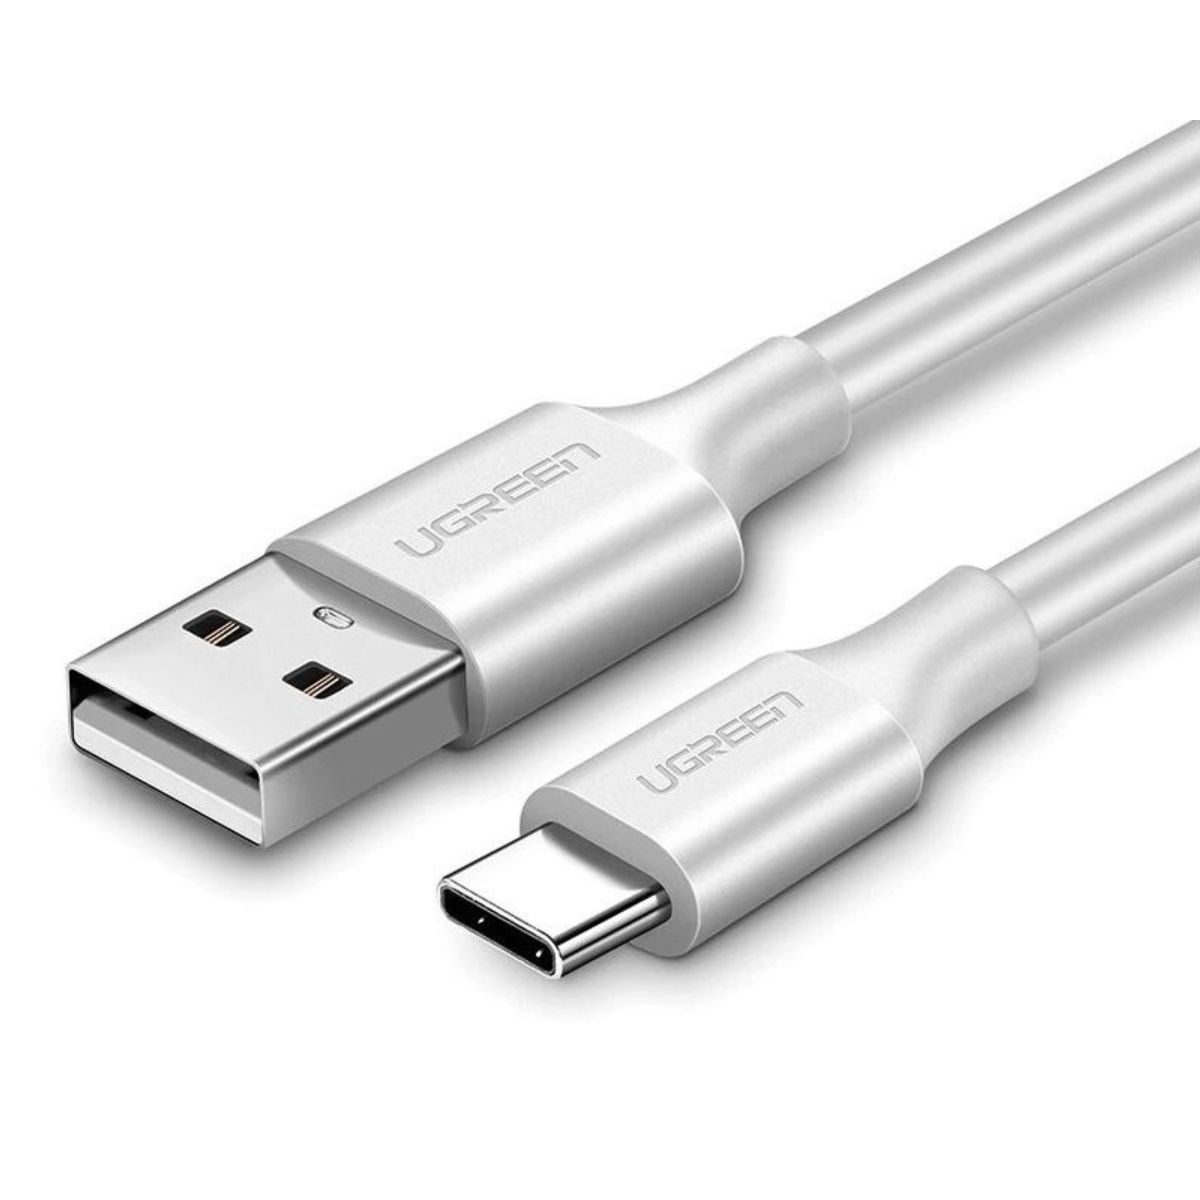 Cáp sạc USB 2.0 sang USB type C Ugreen 60122 US287 chiều dài 1.5m, màu trắng, hỗ trợ sạc nhanh 3A